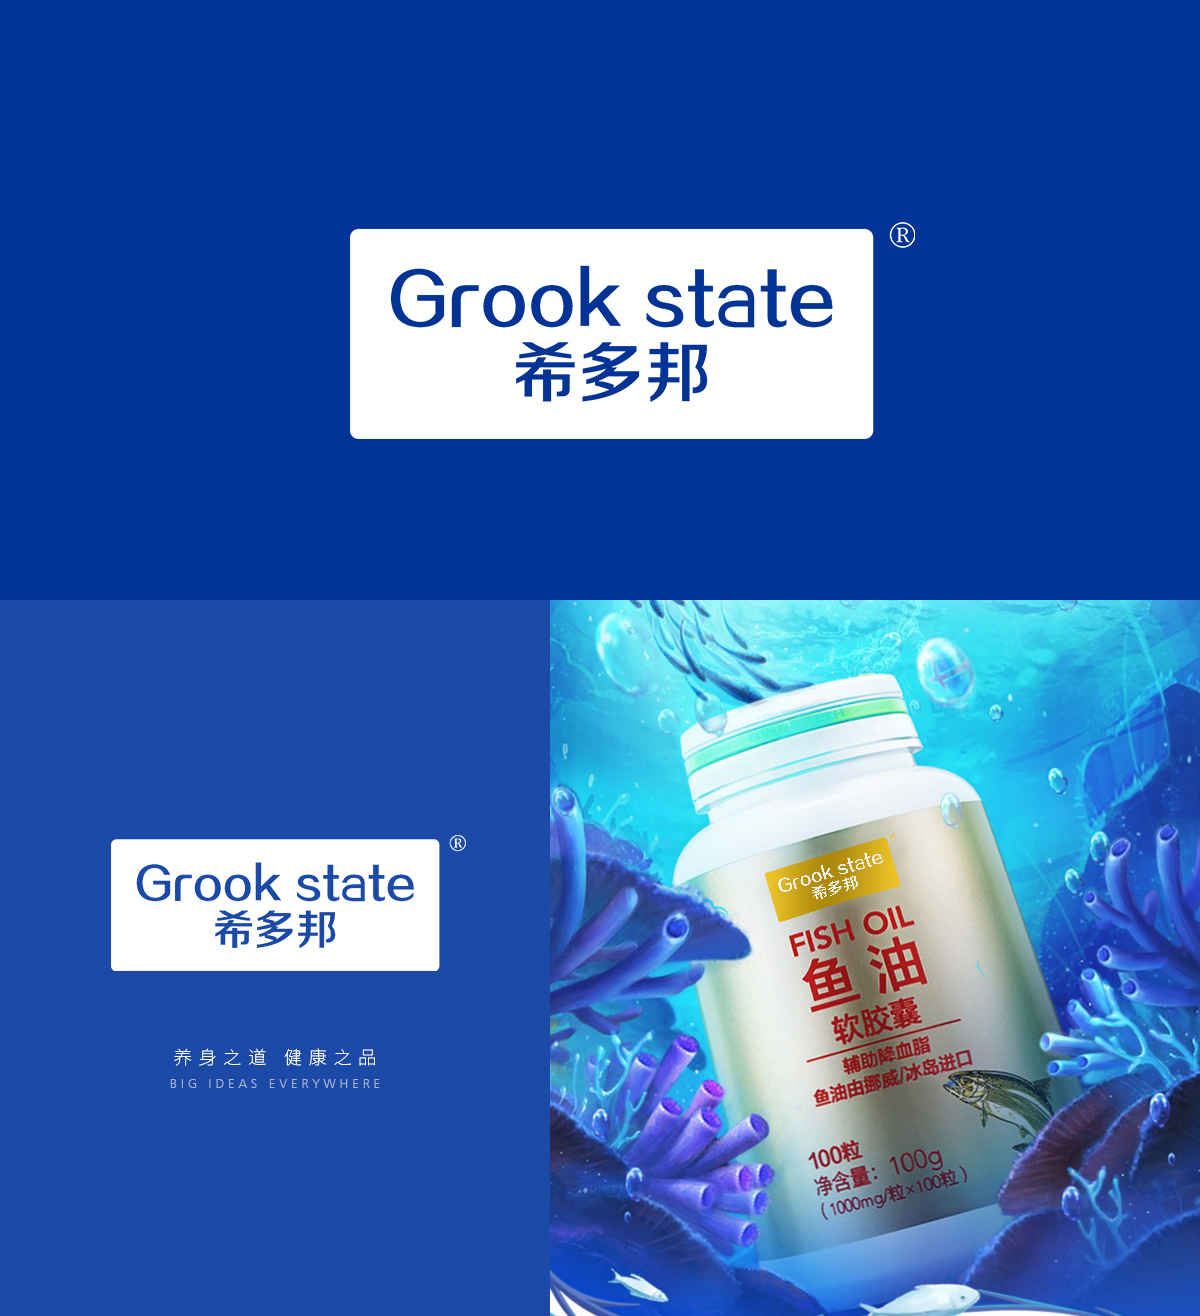 希多邦 GROOK STATE